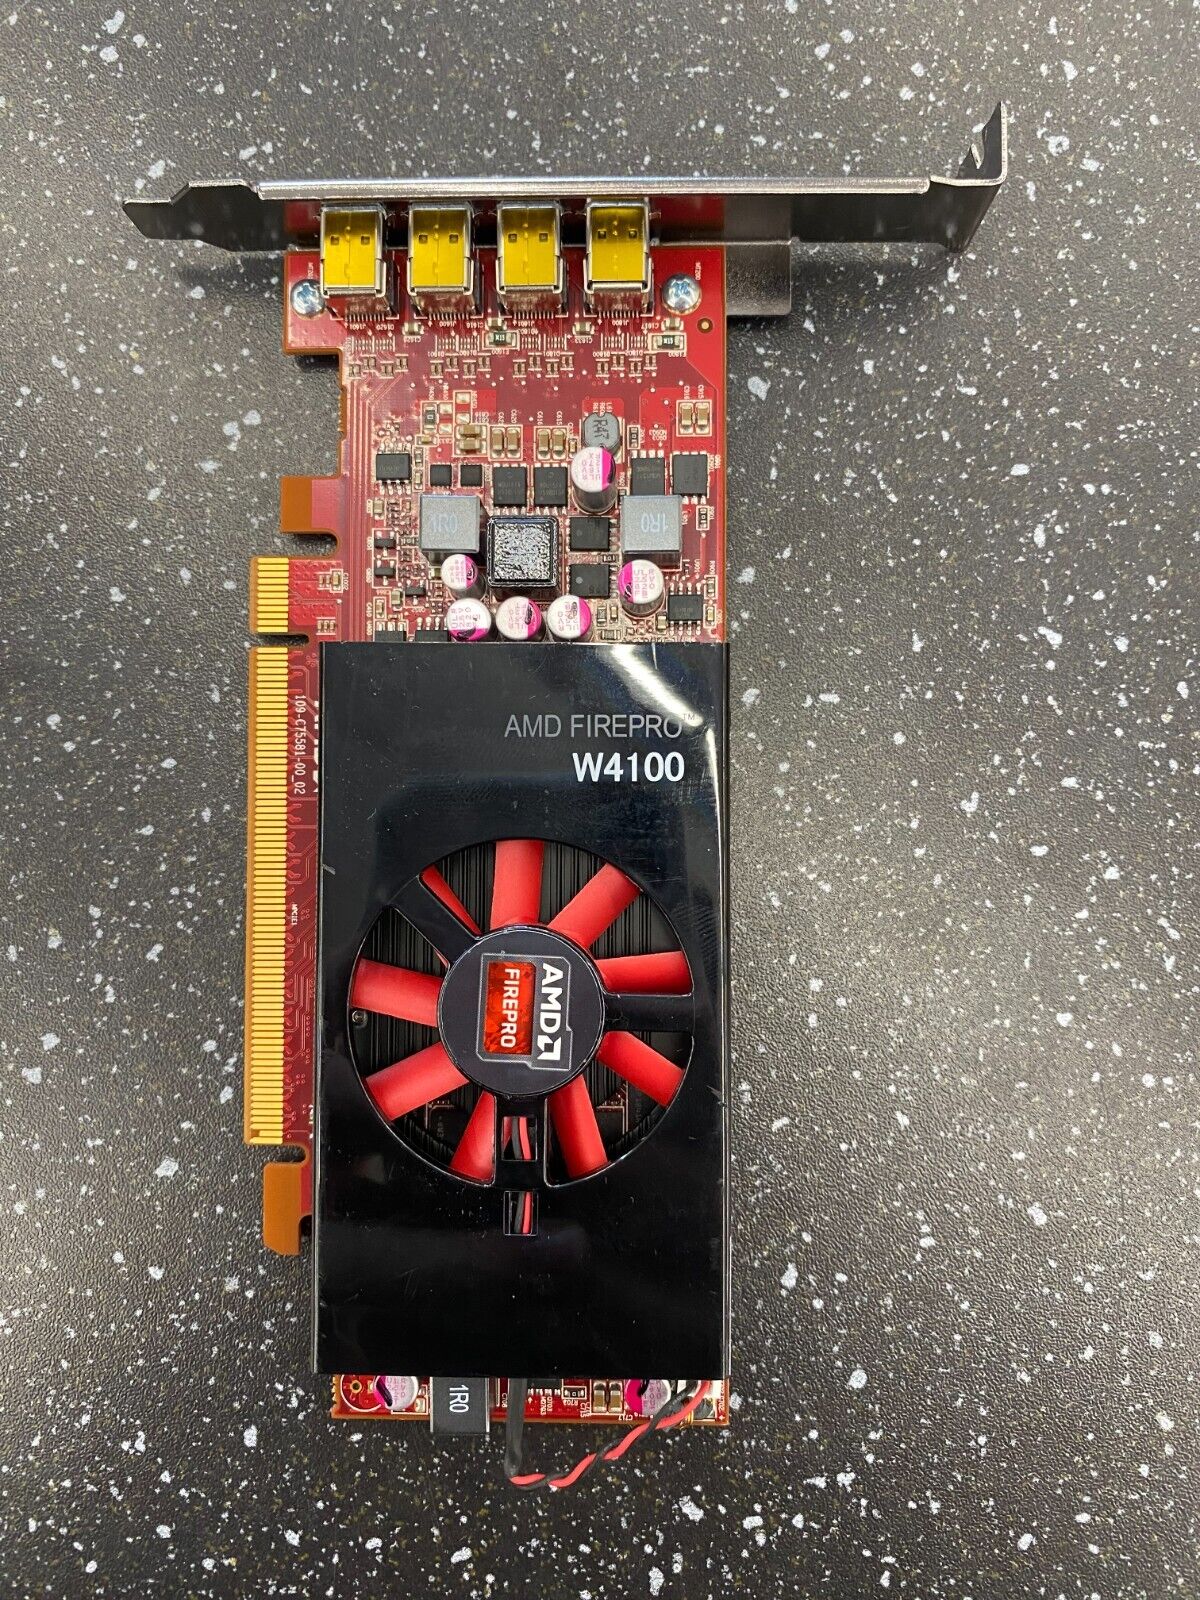 AMD FirePro W4100 2GB GDDR5 Graphics Card - 4x Mini DisplayPort